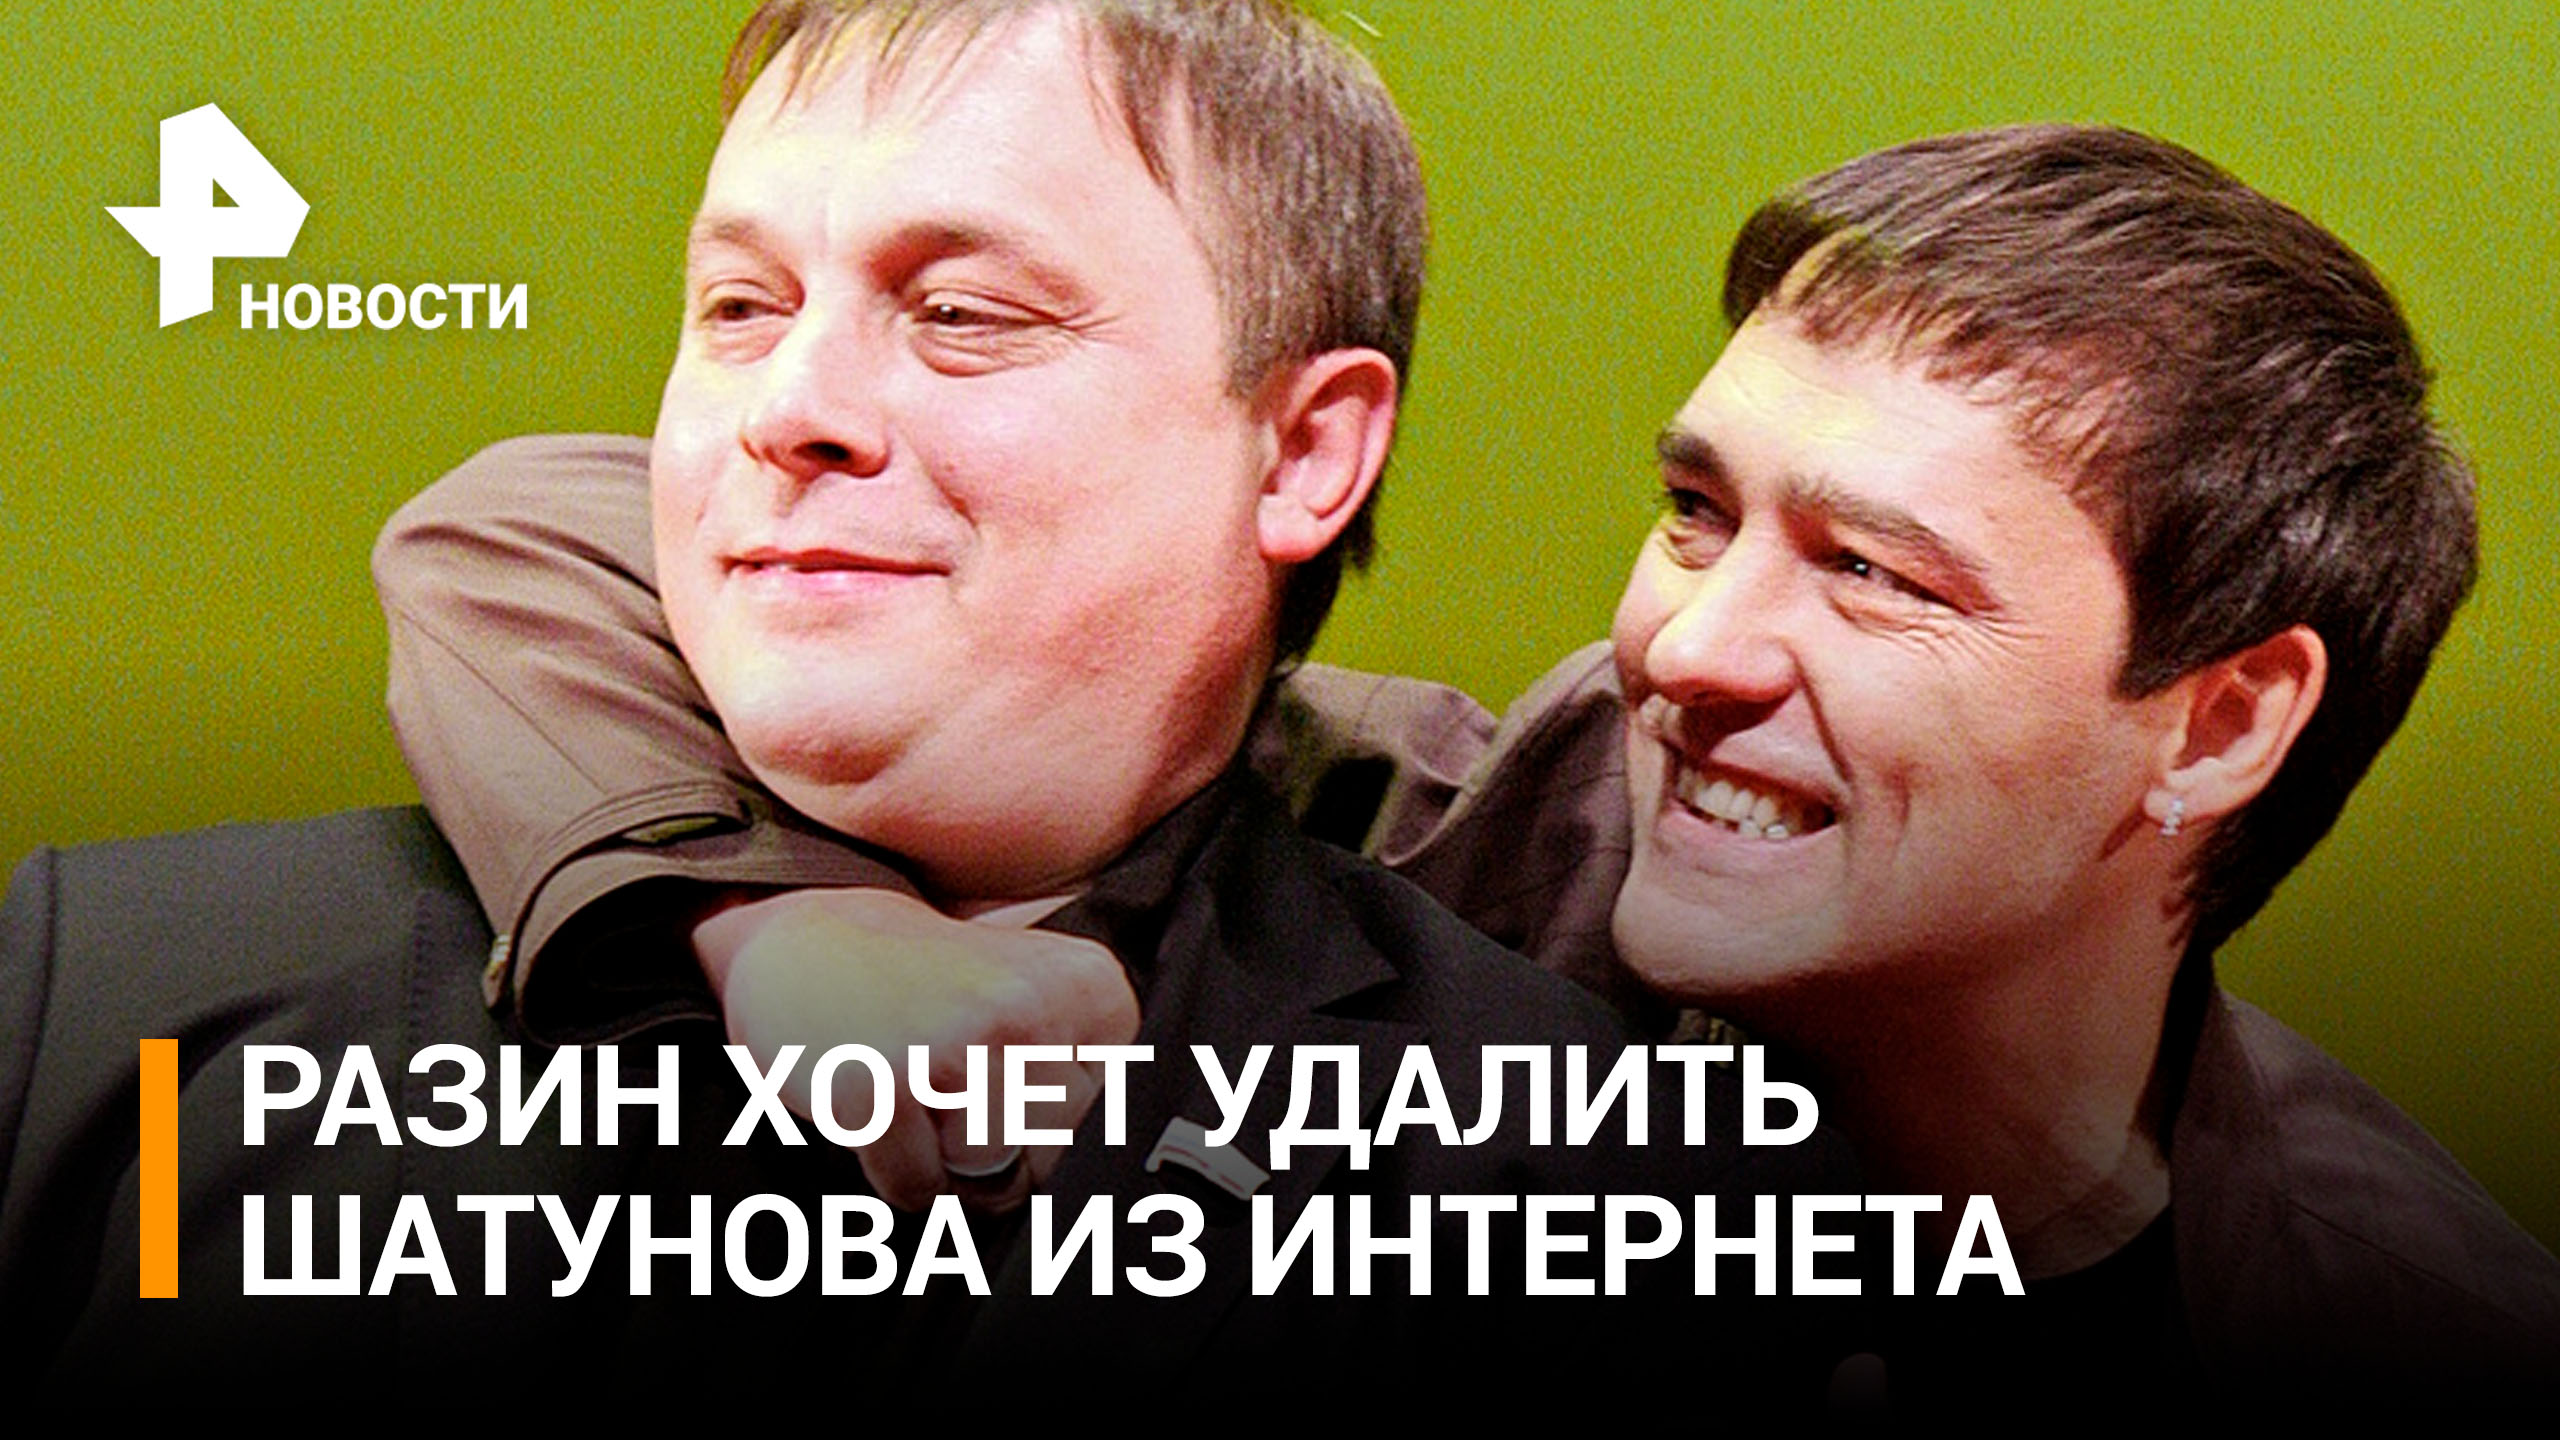 Разин заявил, что видео с Шатуновым удалят из Сети / РЕН Новости